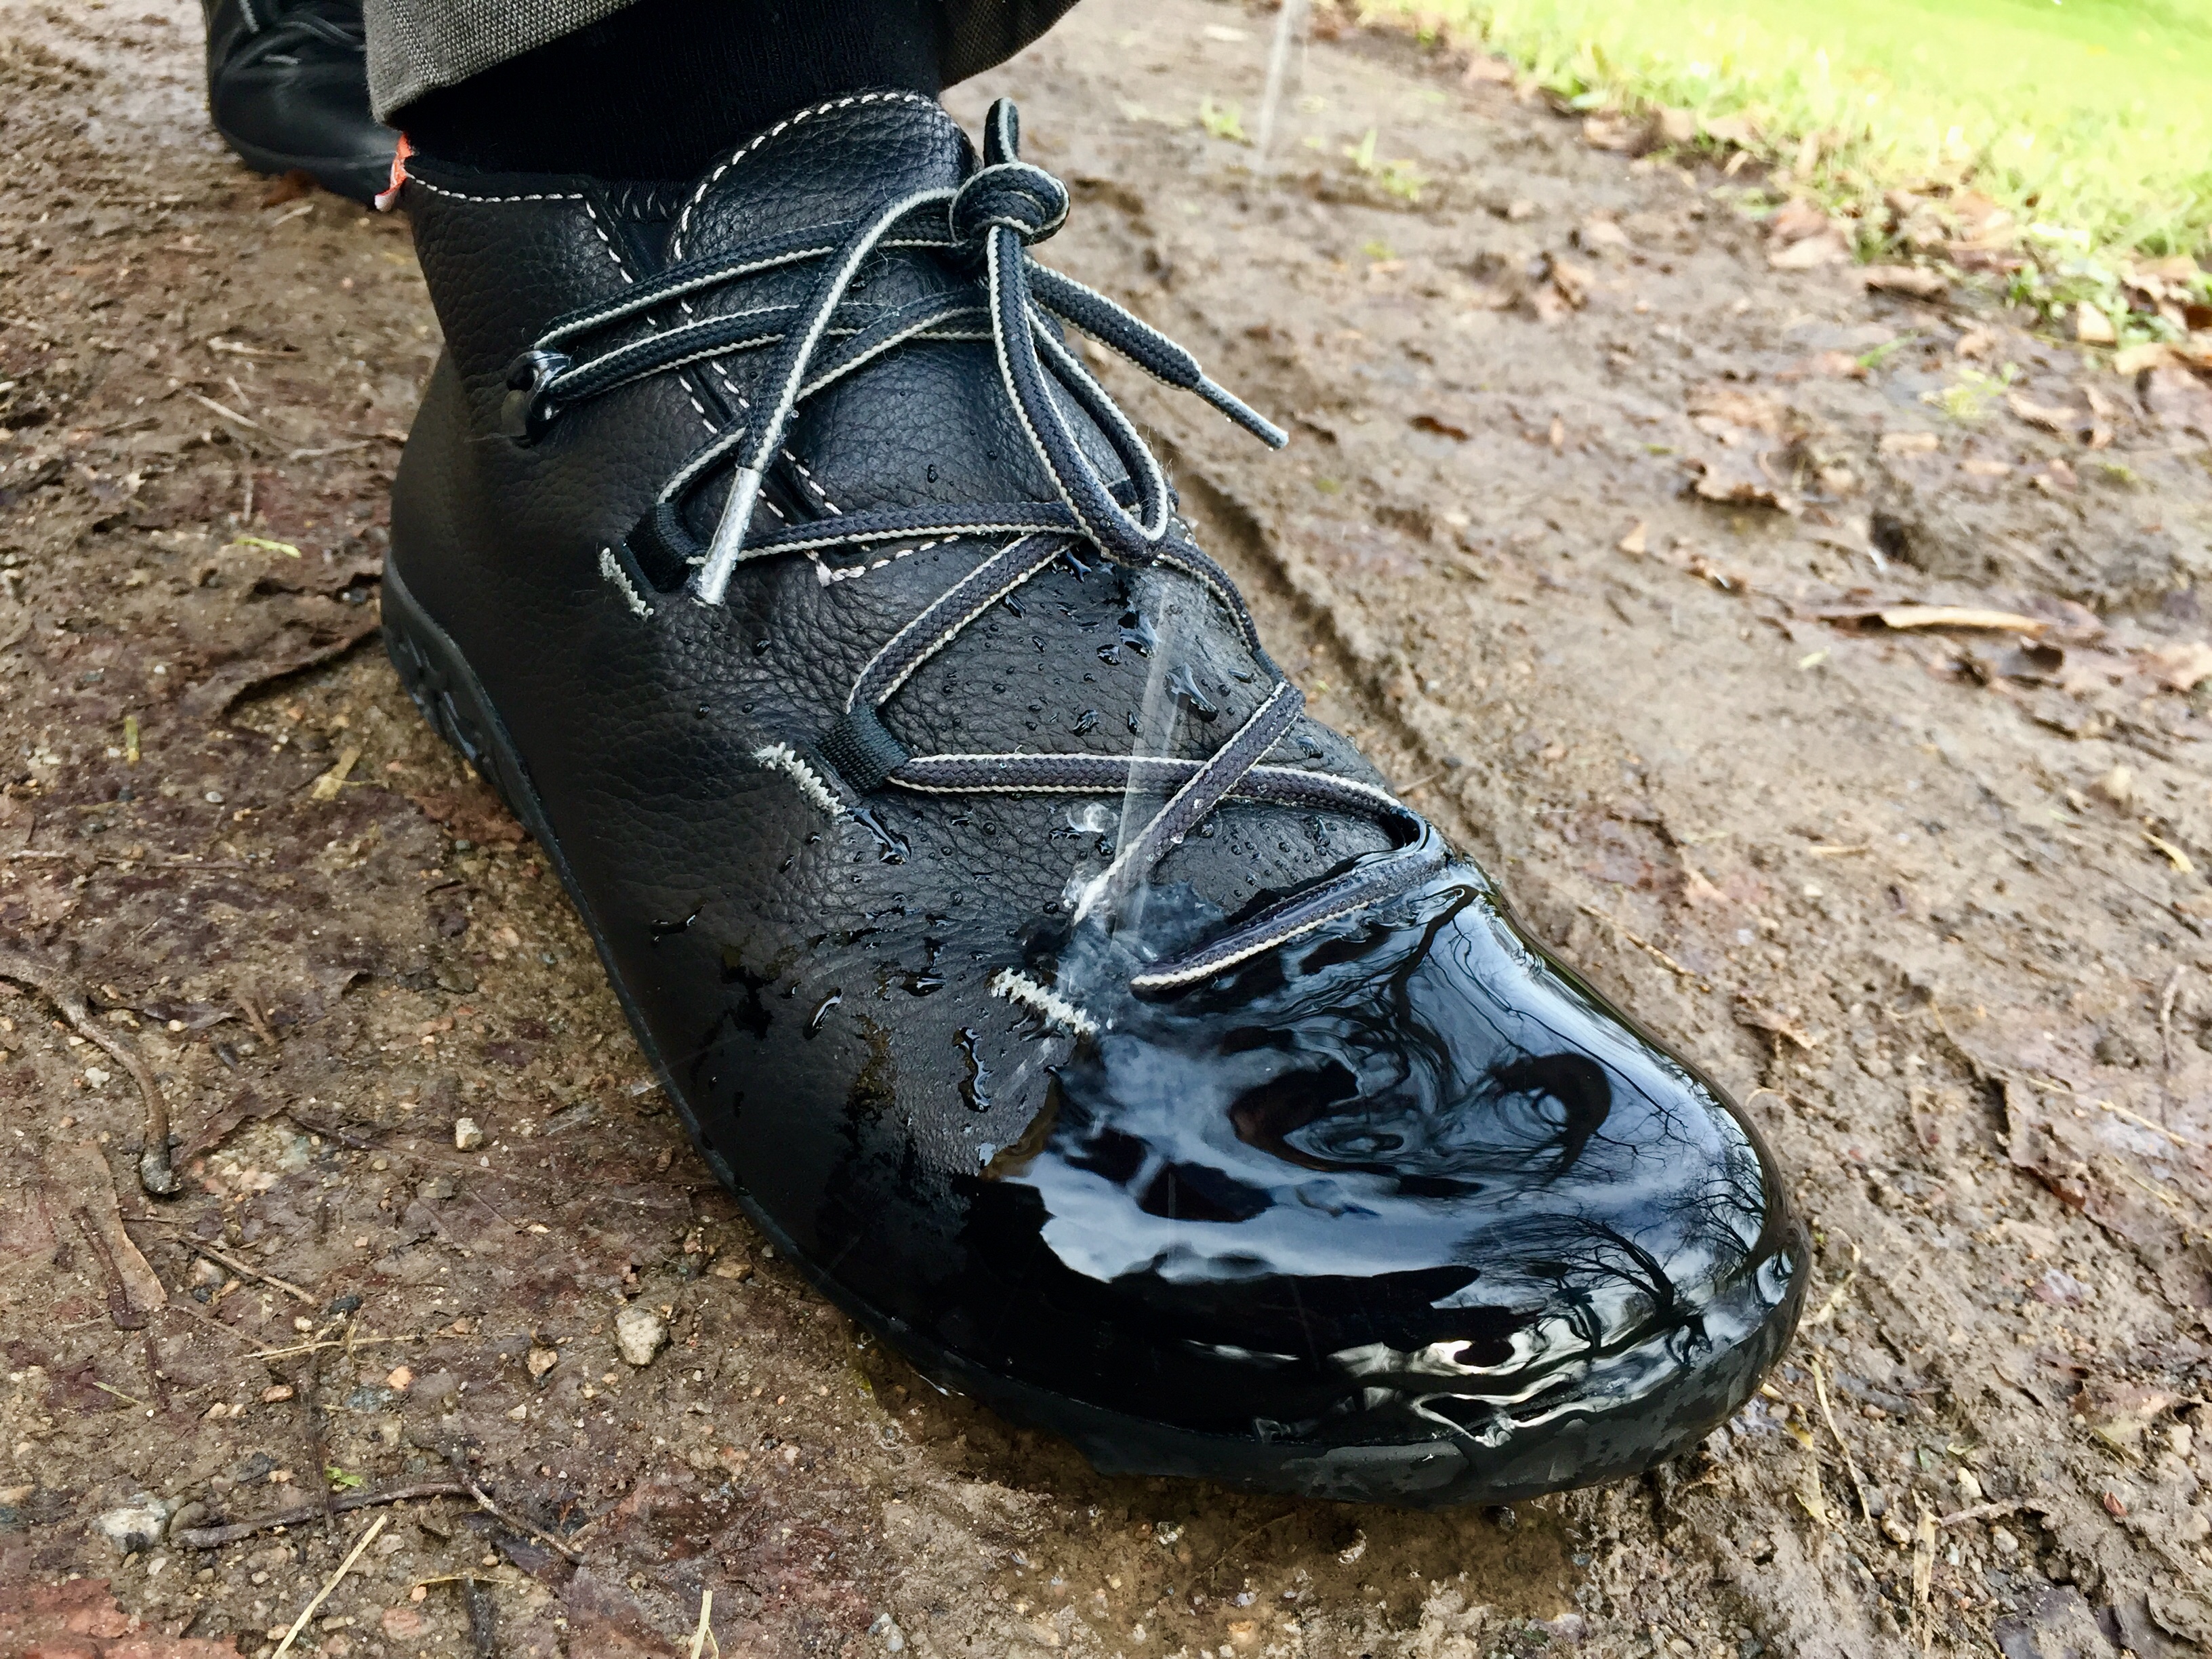 Deště se v botách Lizard Kross Urban bát nemusíte.